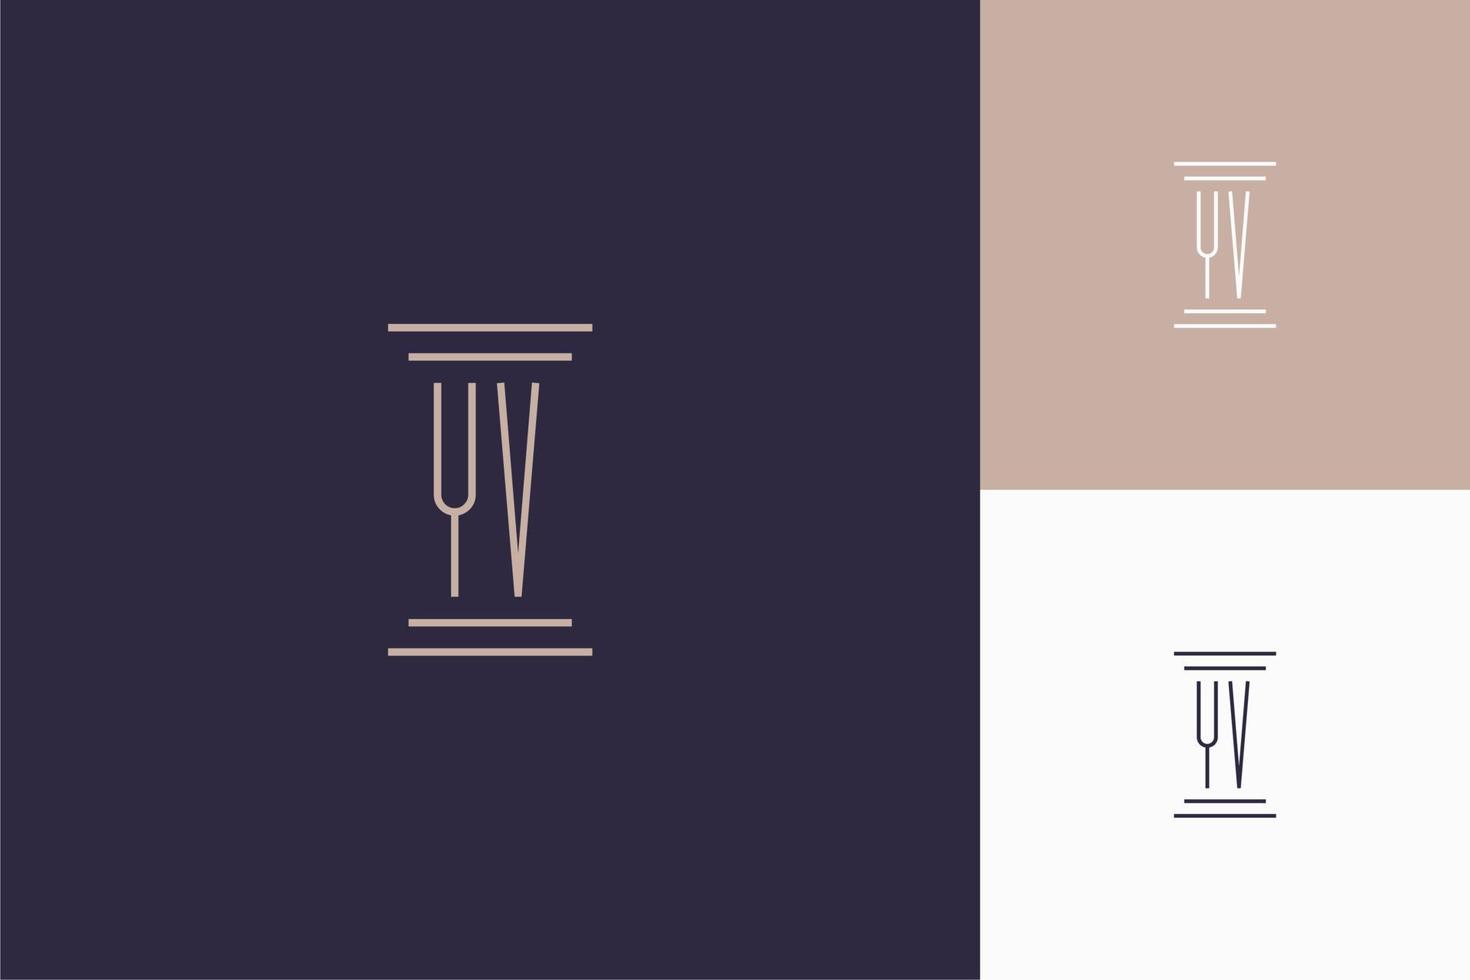 yv monogram initialen ontwerp voor advocatenkantoor logo vector